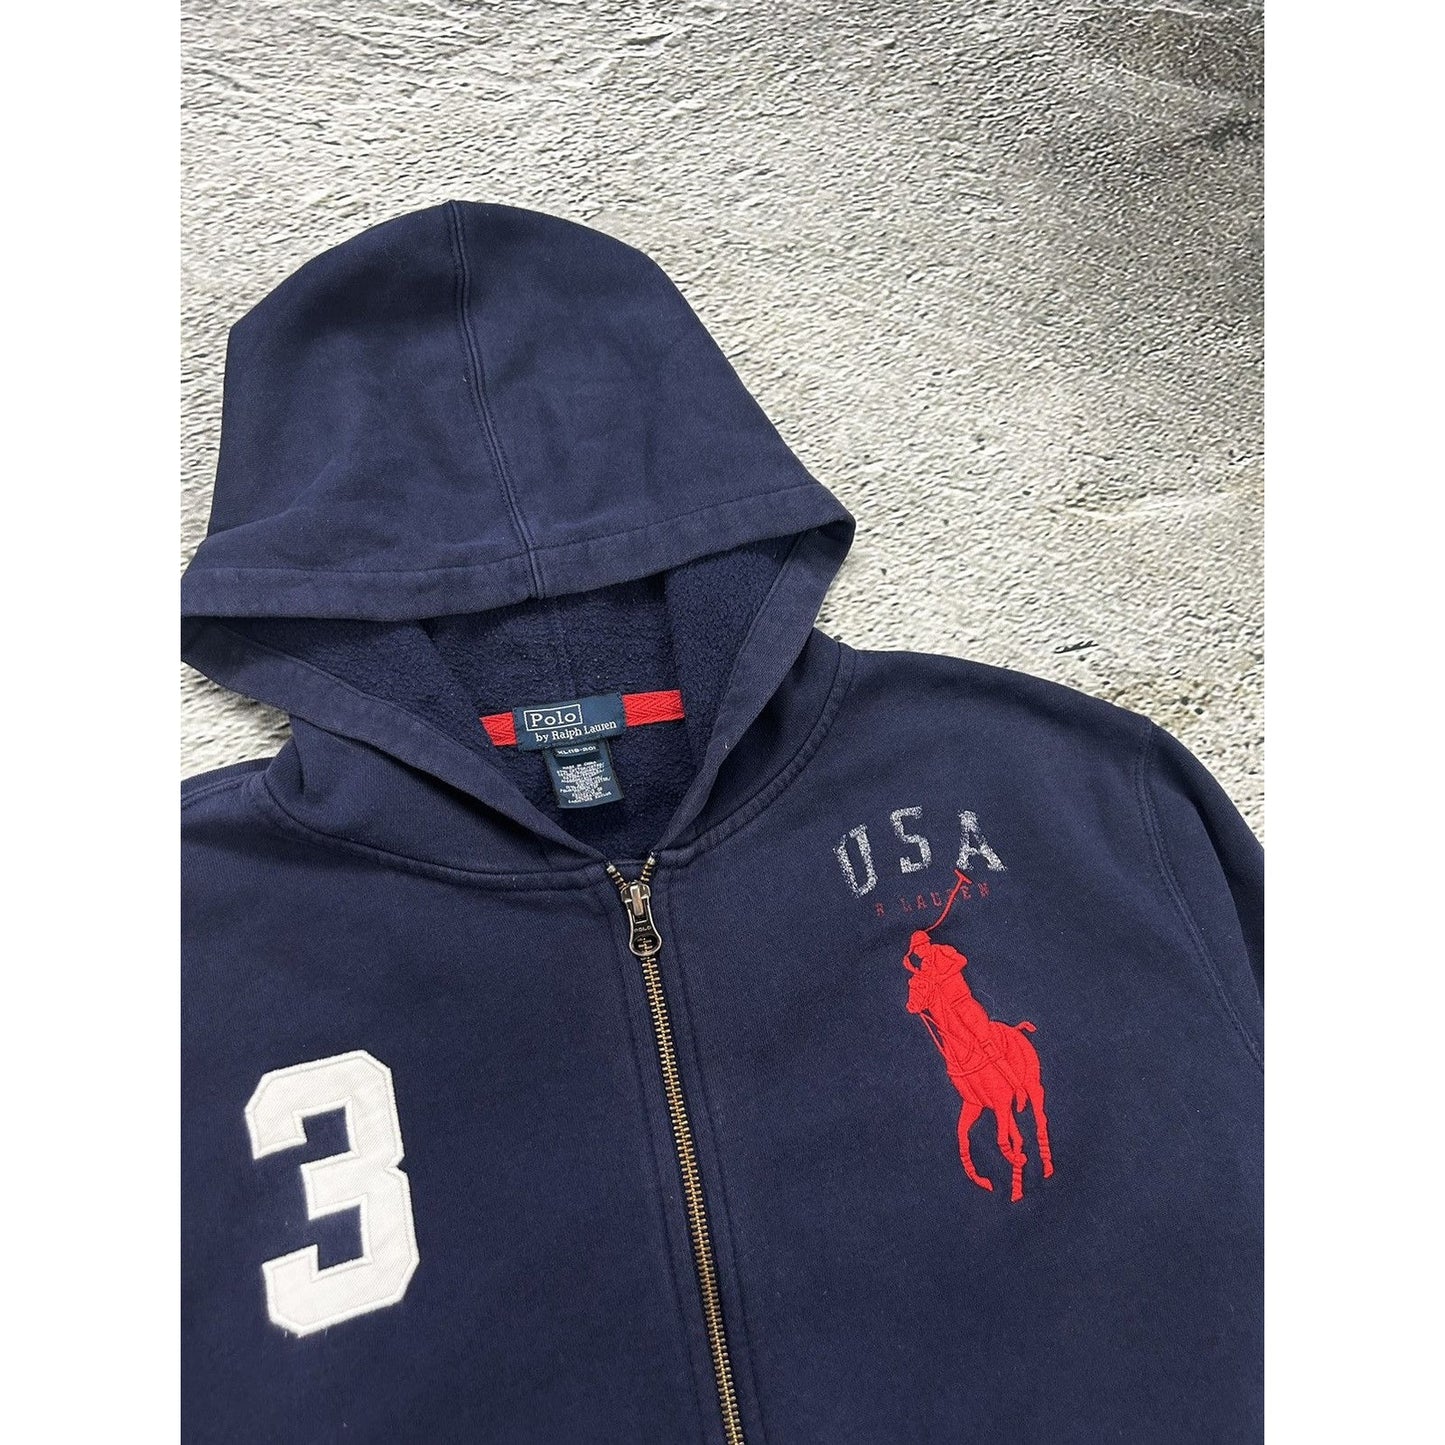 Chief Keef Polo Ralph Lauren zip hoodie USA navy